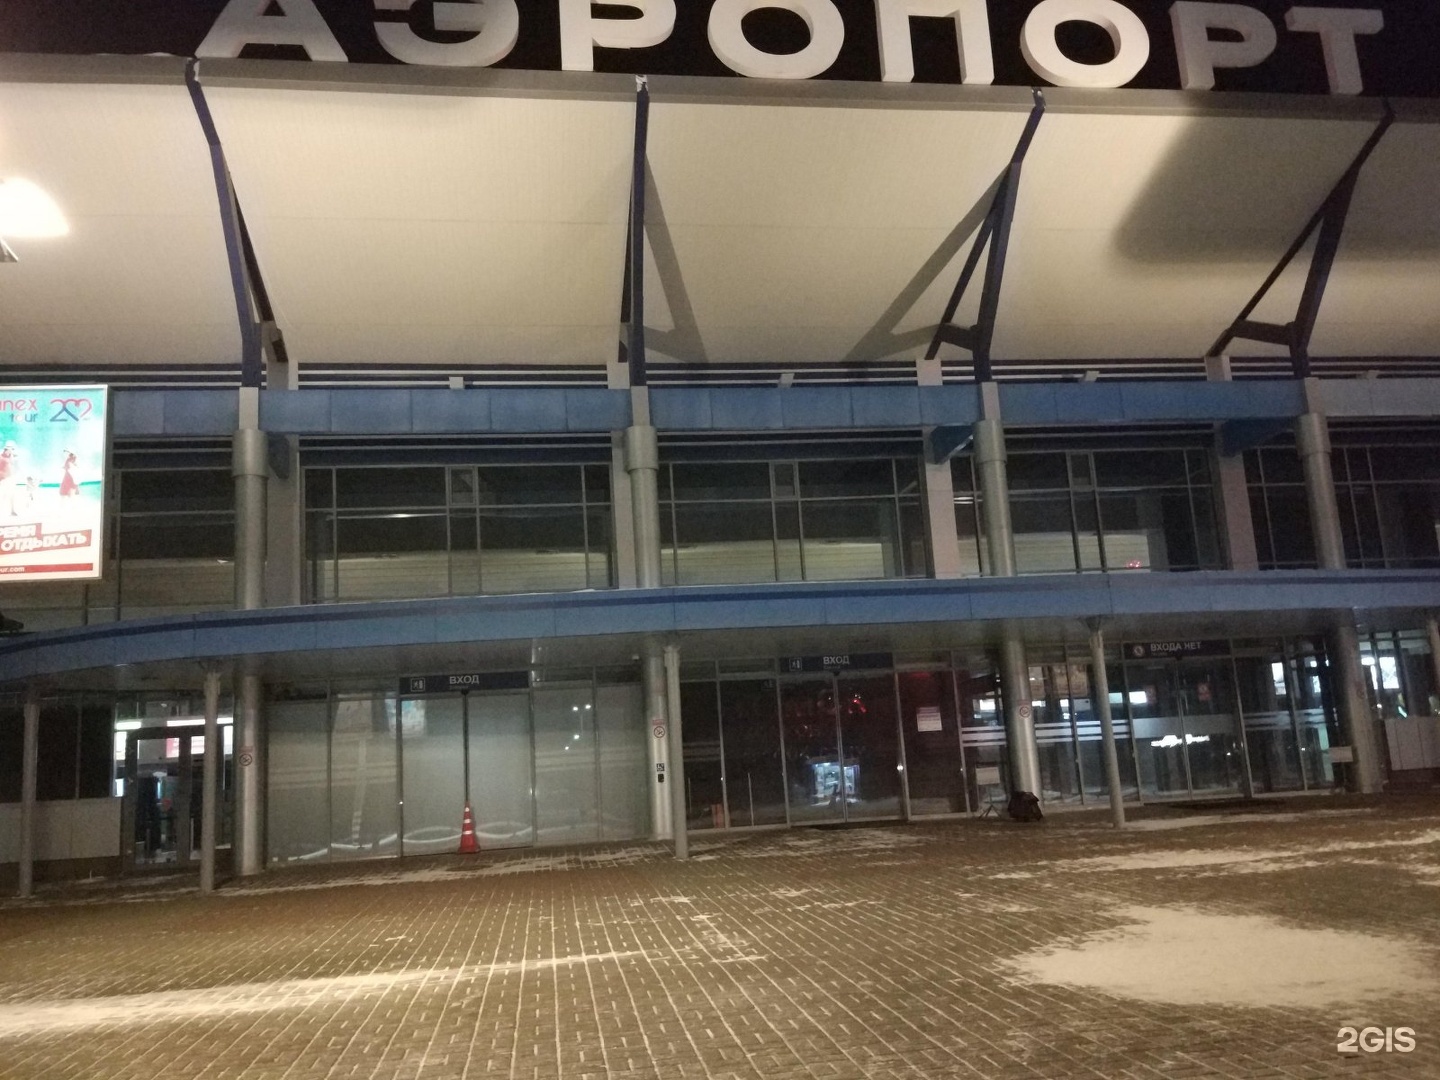 аэропорт в томске